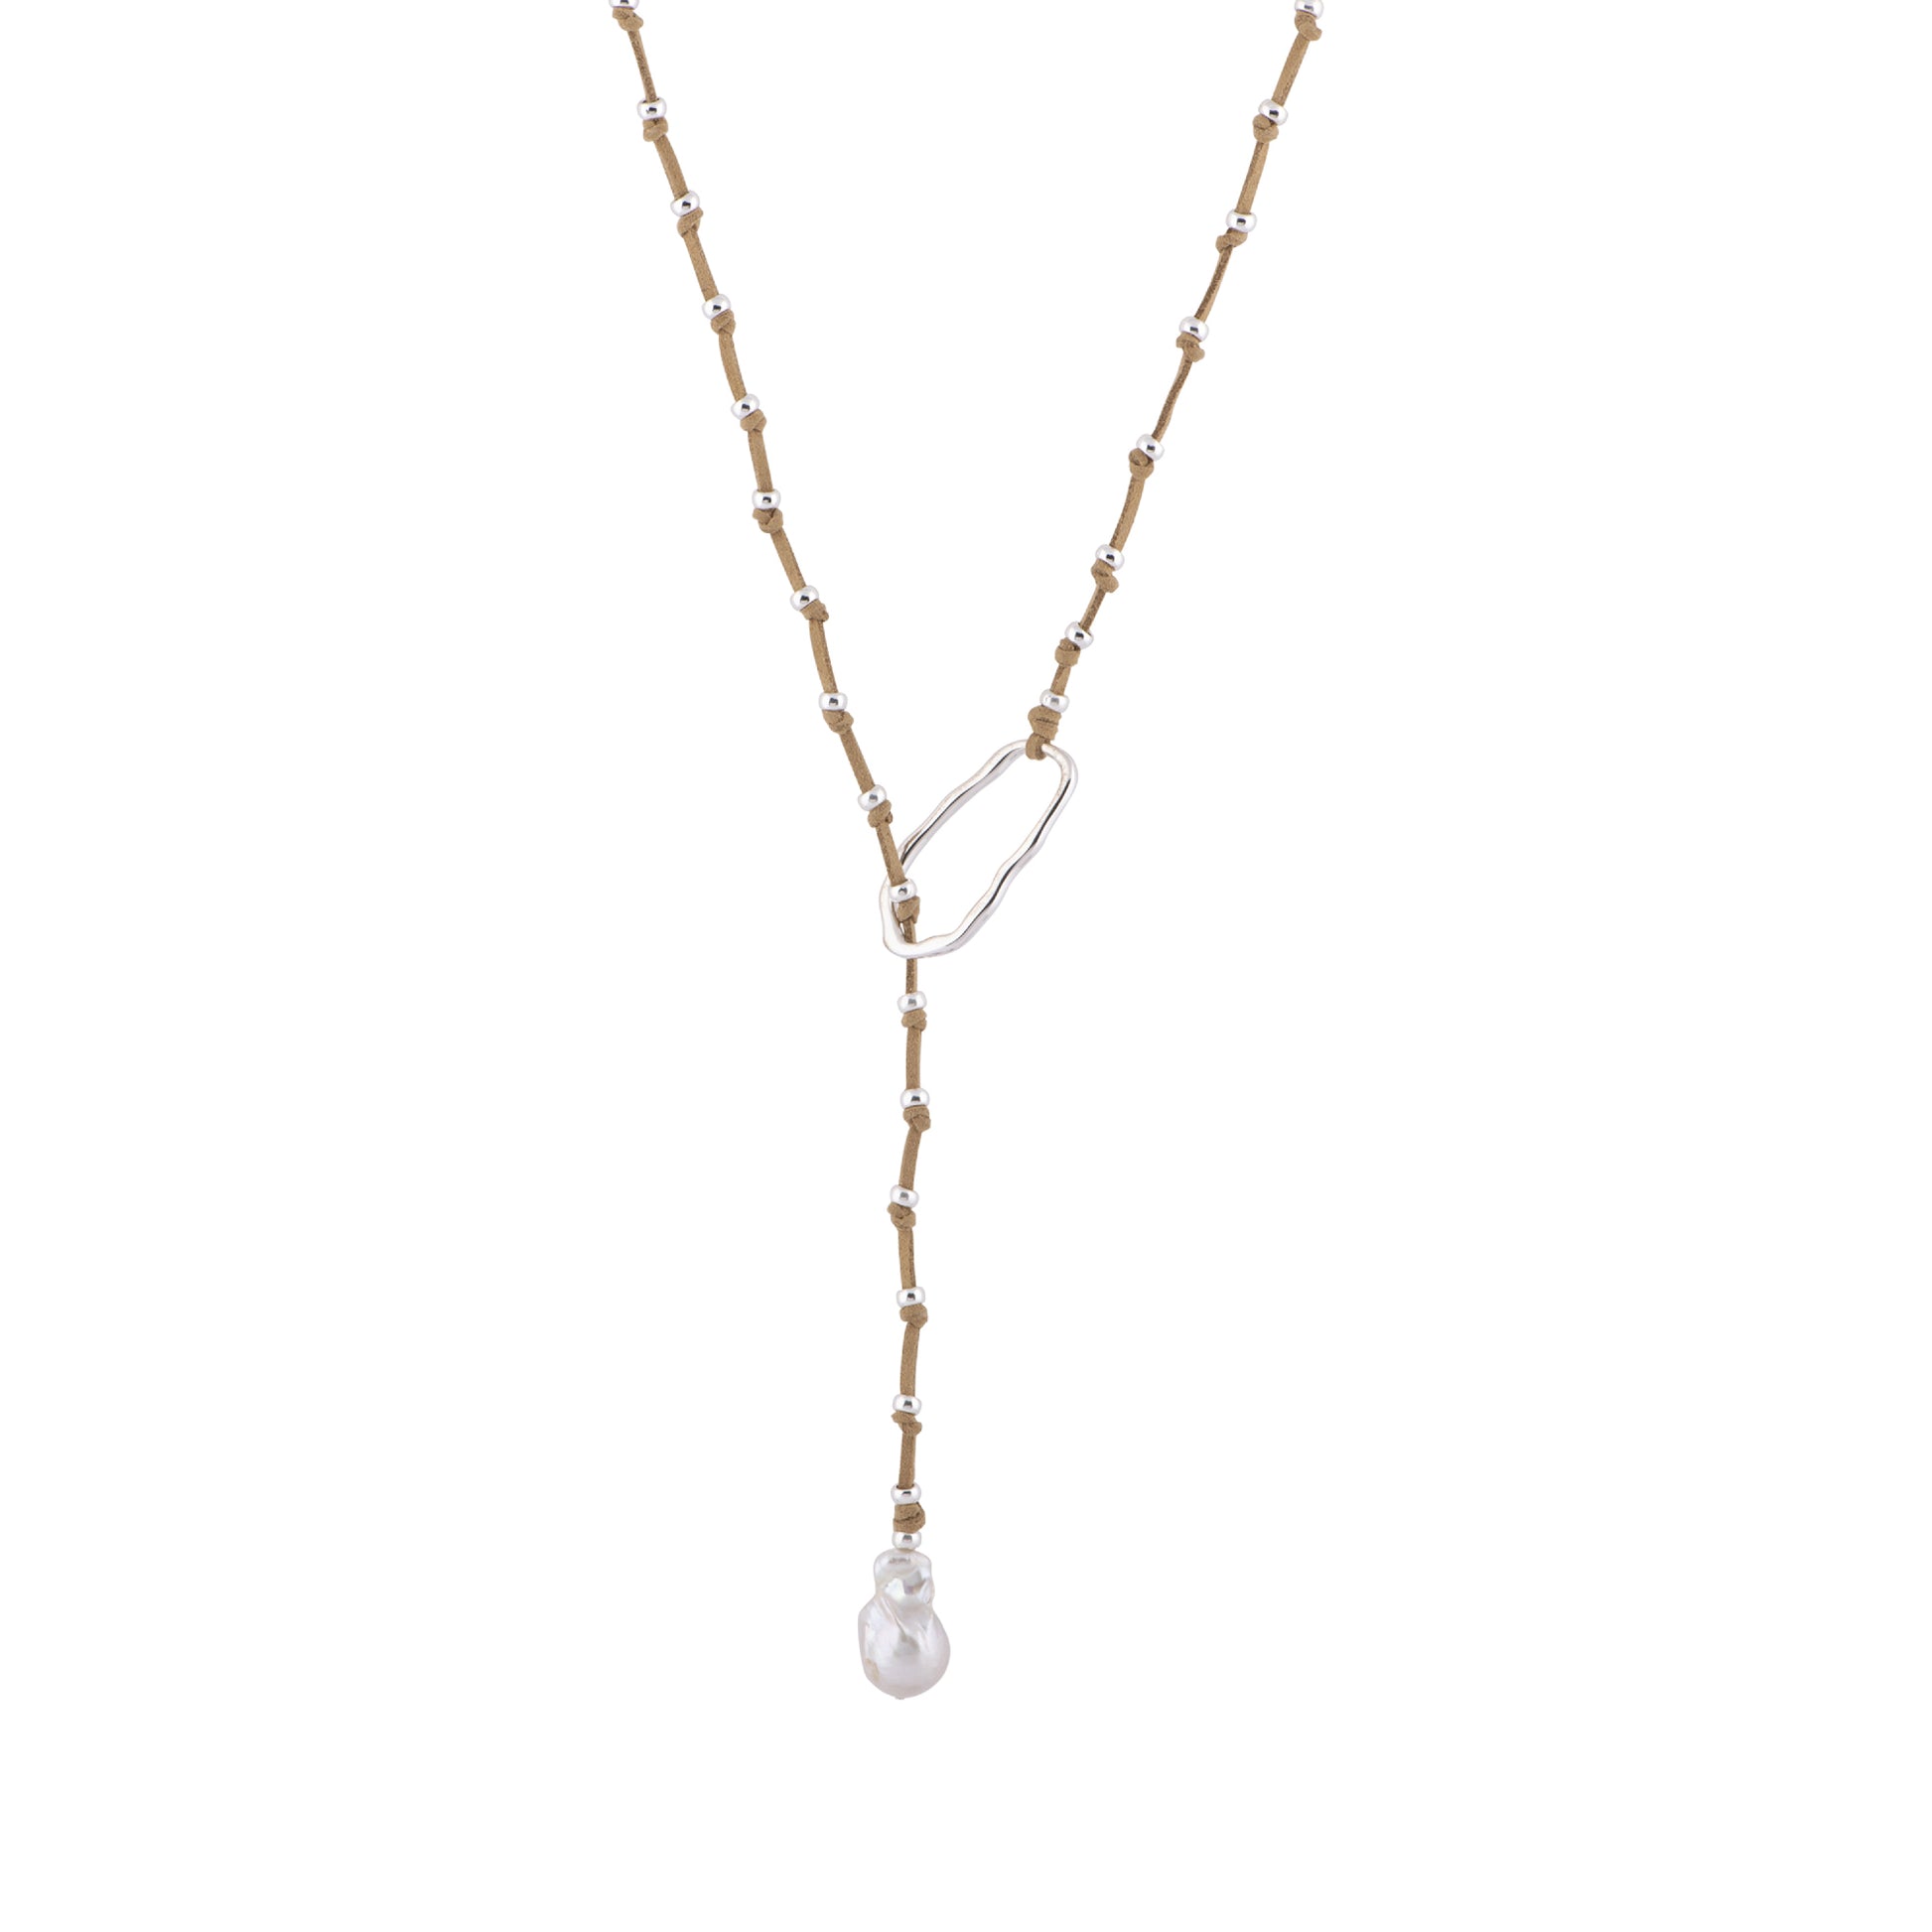 Carina - Adjustable baroque pearl necklace (Tan)